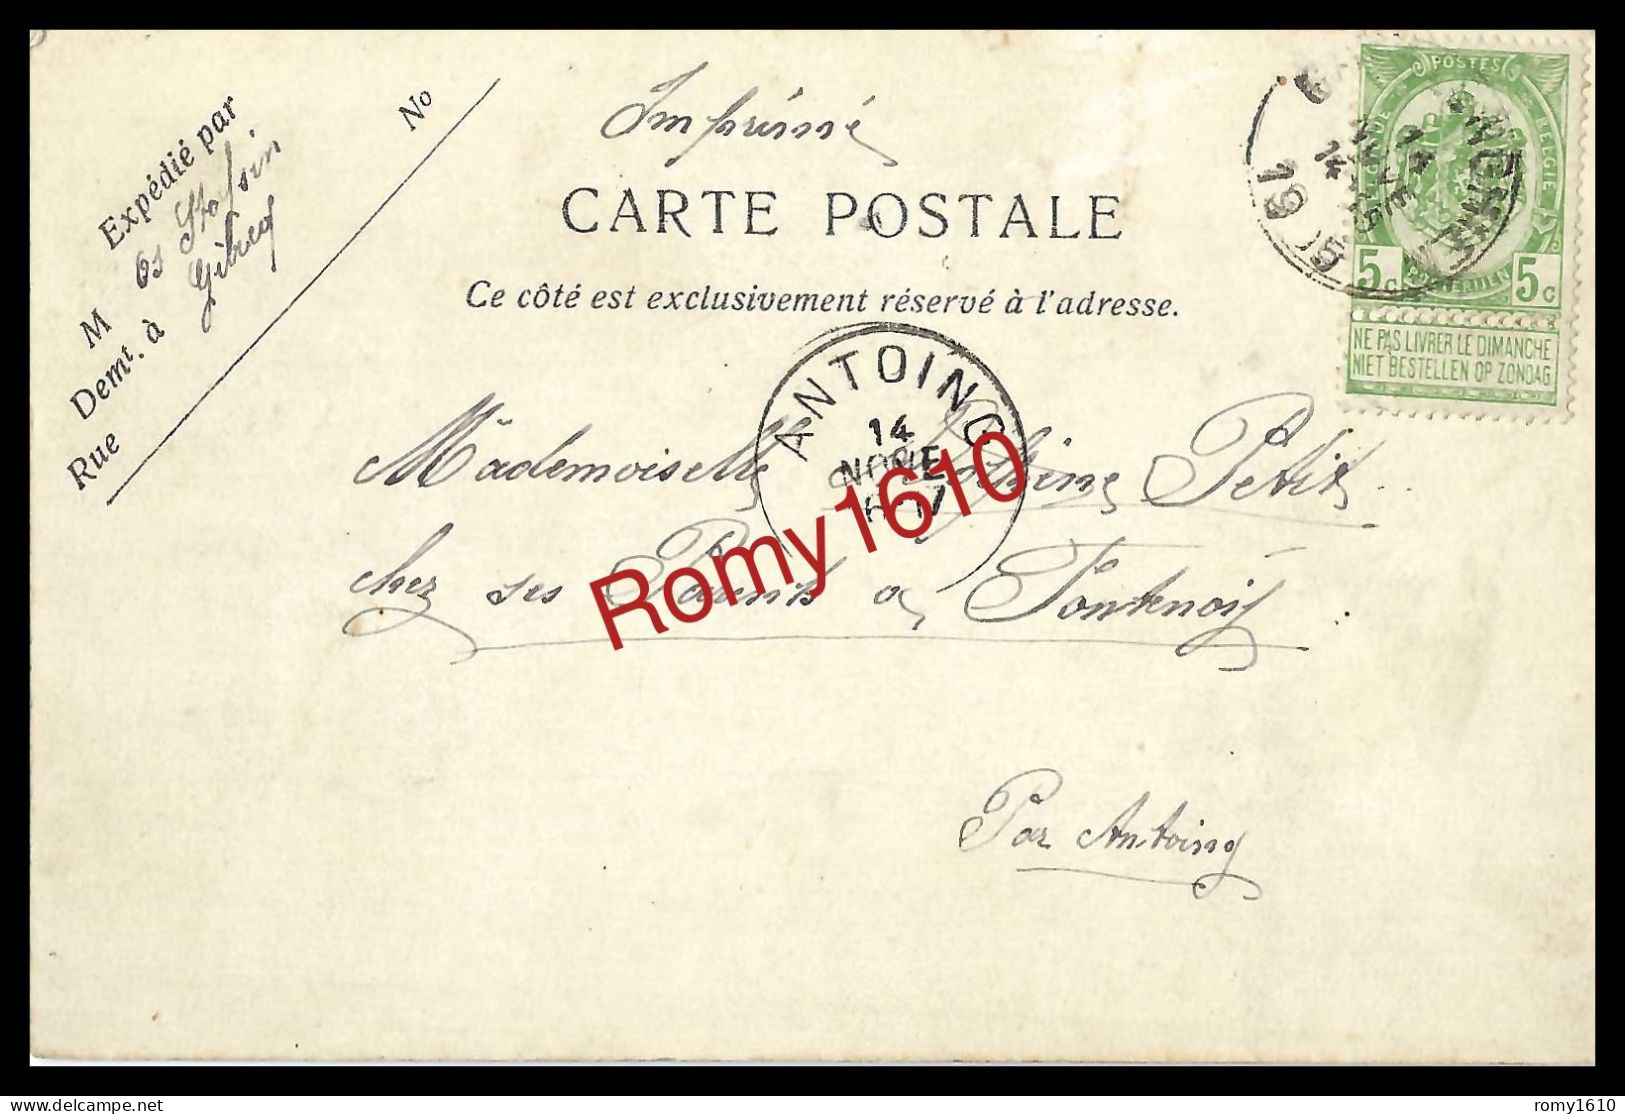 BASSILY - SILLY. Cyclone De La Nuit Du 4 Au 5 Juillet 1905. La Ferme Boulanger Détruite. Circulé En 1905 - 2 Scans. - Silly